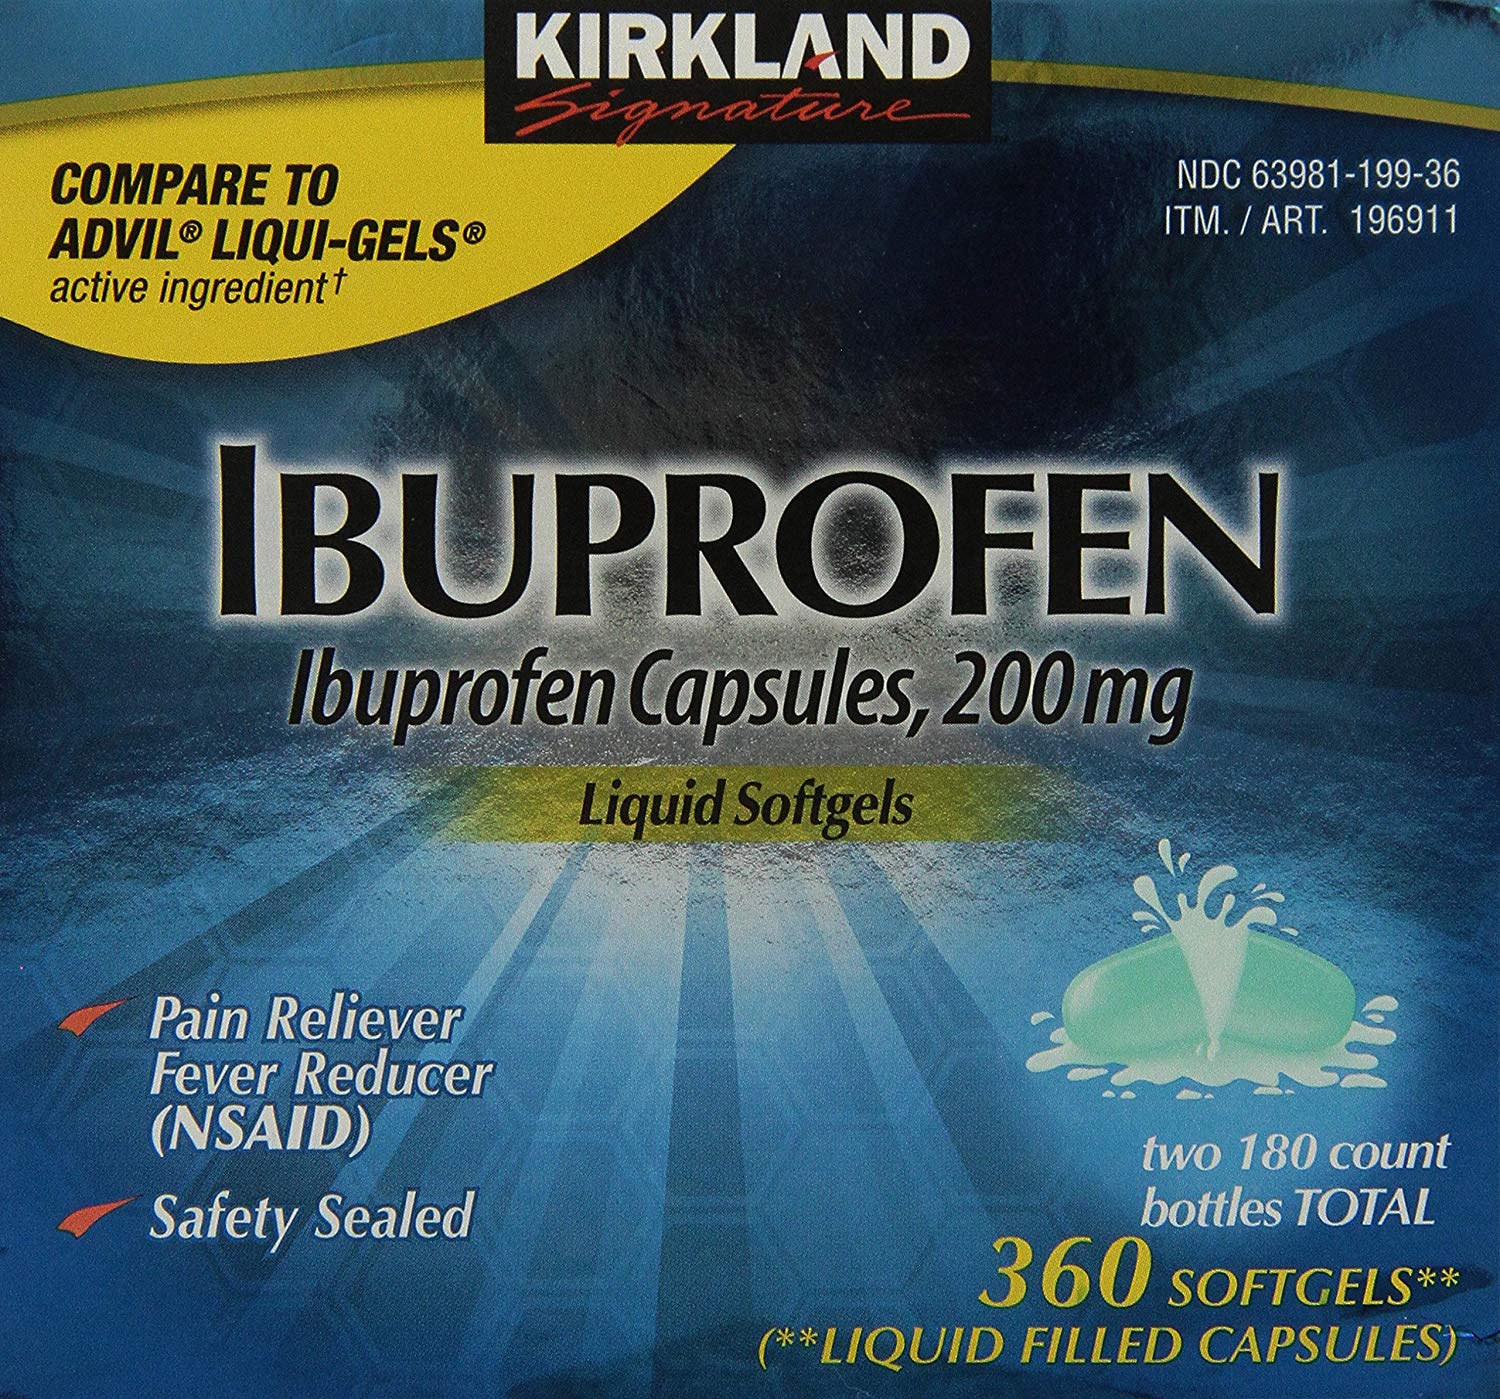 Ibuprofen Liquid Softgels 200mg, 360 Capsules, Kirkland Signature Brand